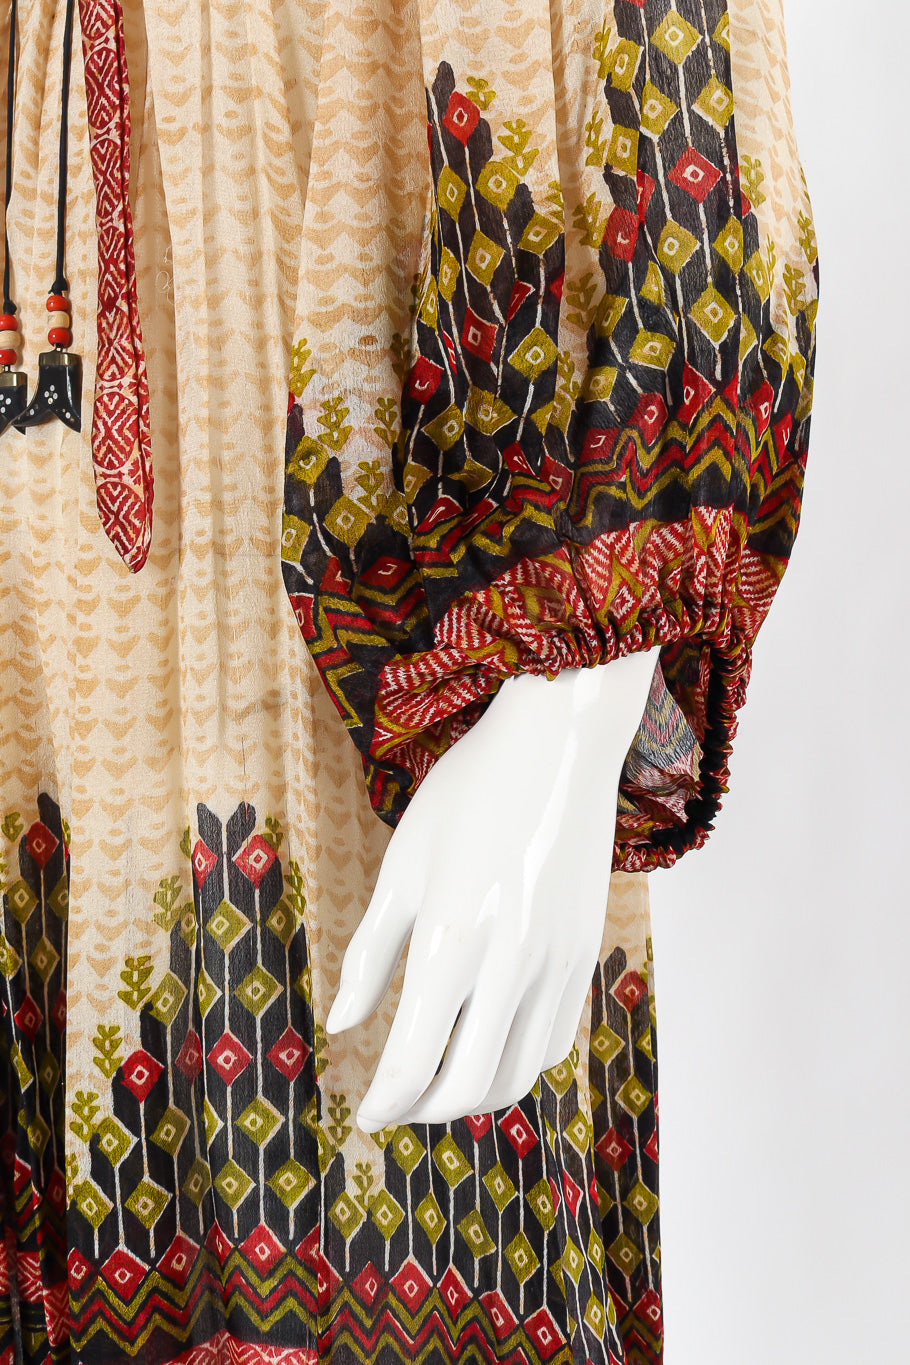 Block print silk dress by Ritu Kumar for Judith Ann Sleeve Details. @recessla